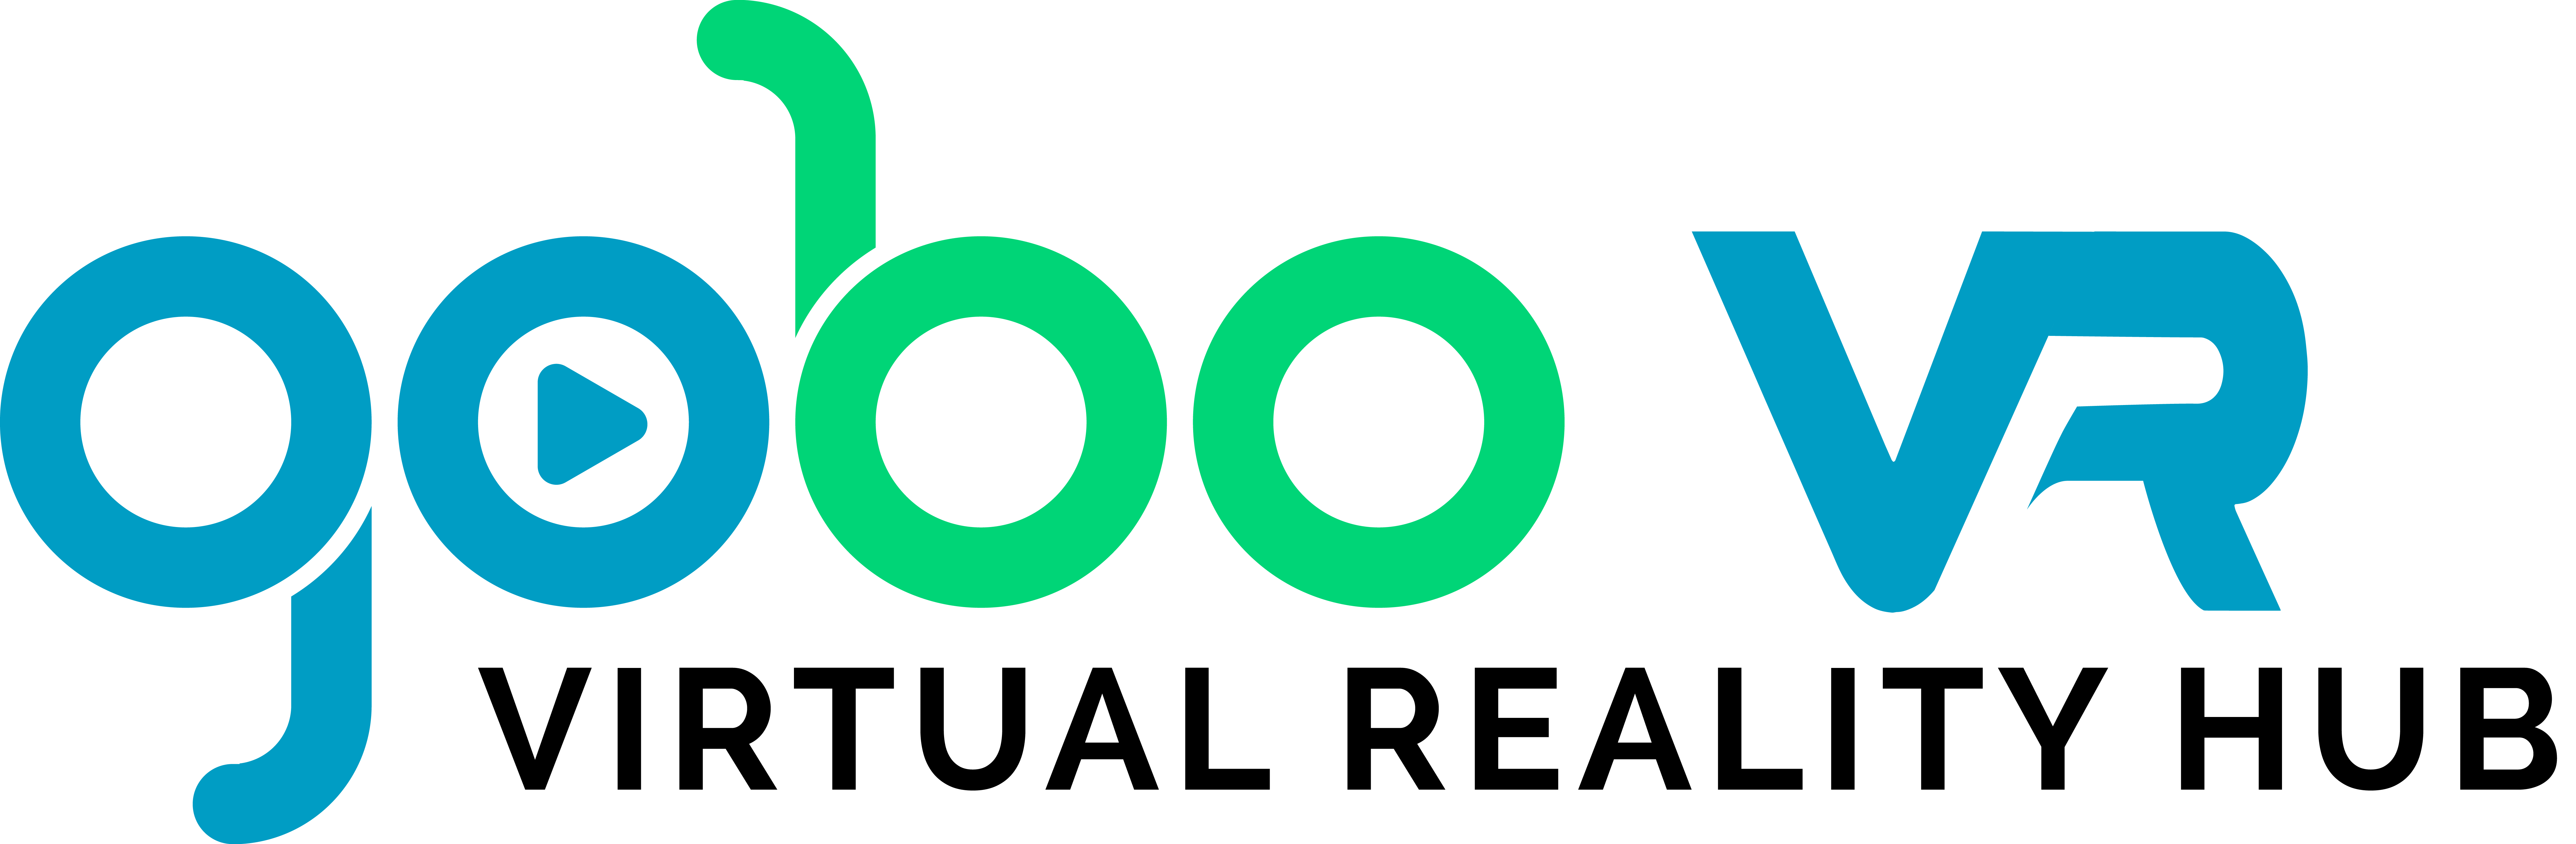 GOBO VR